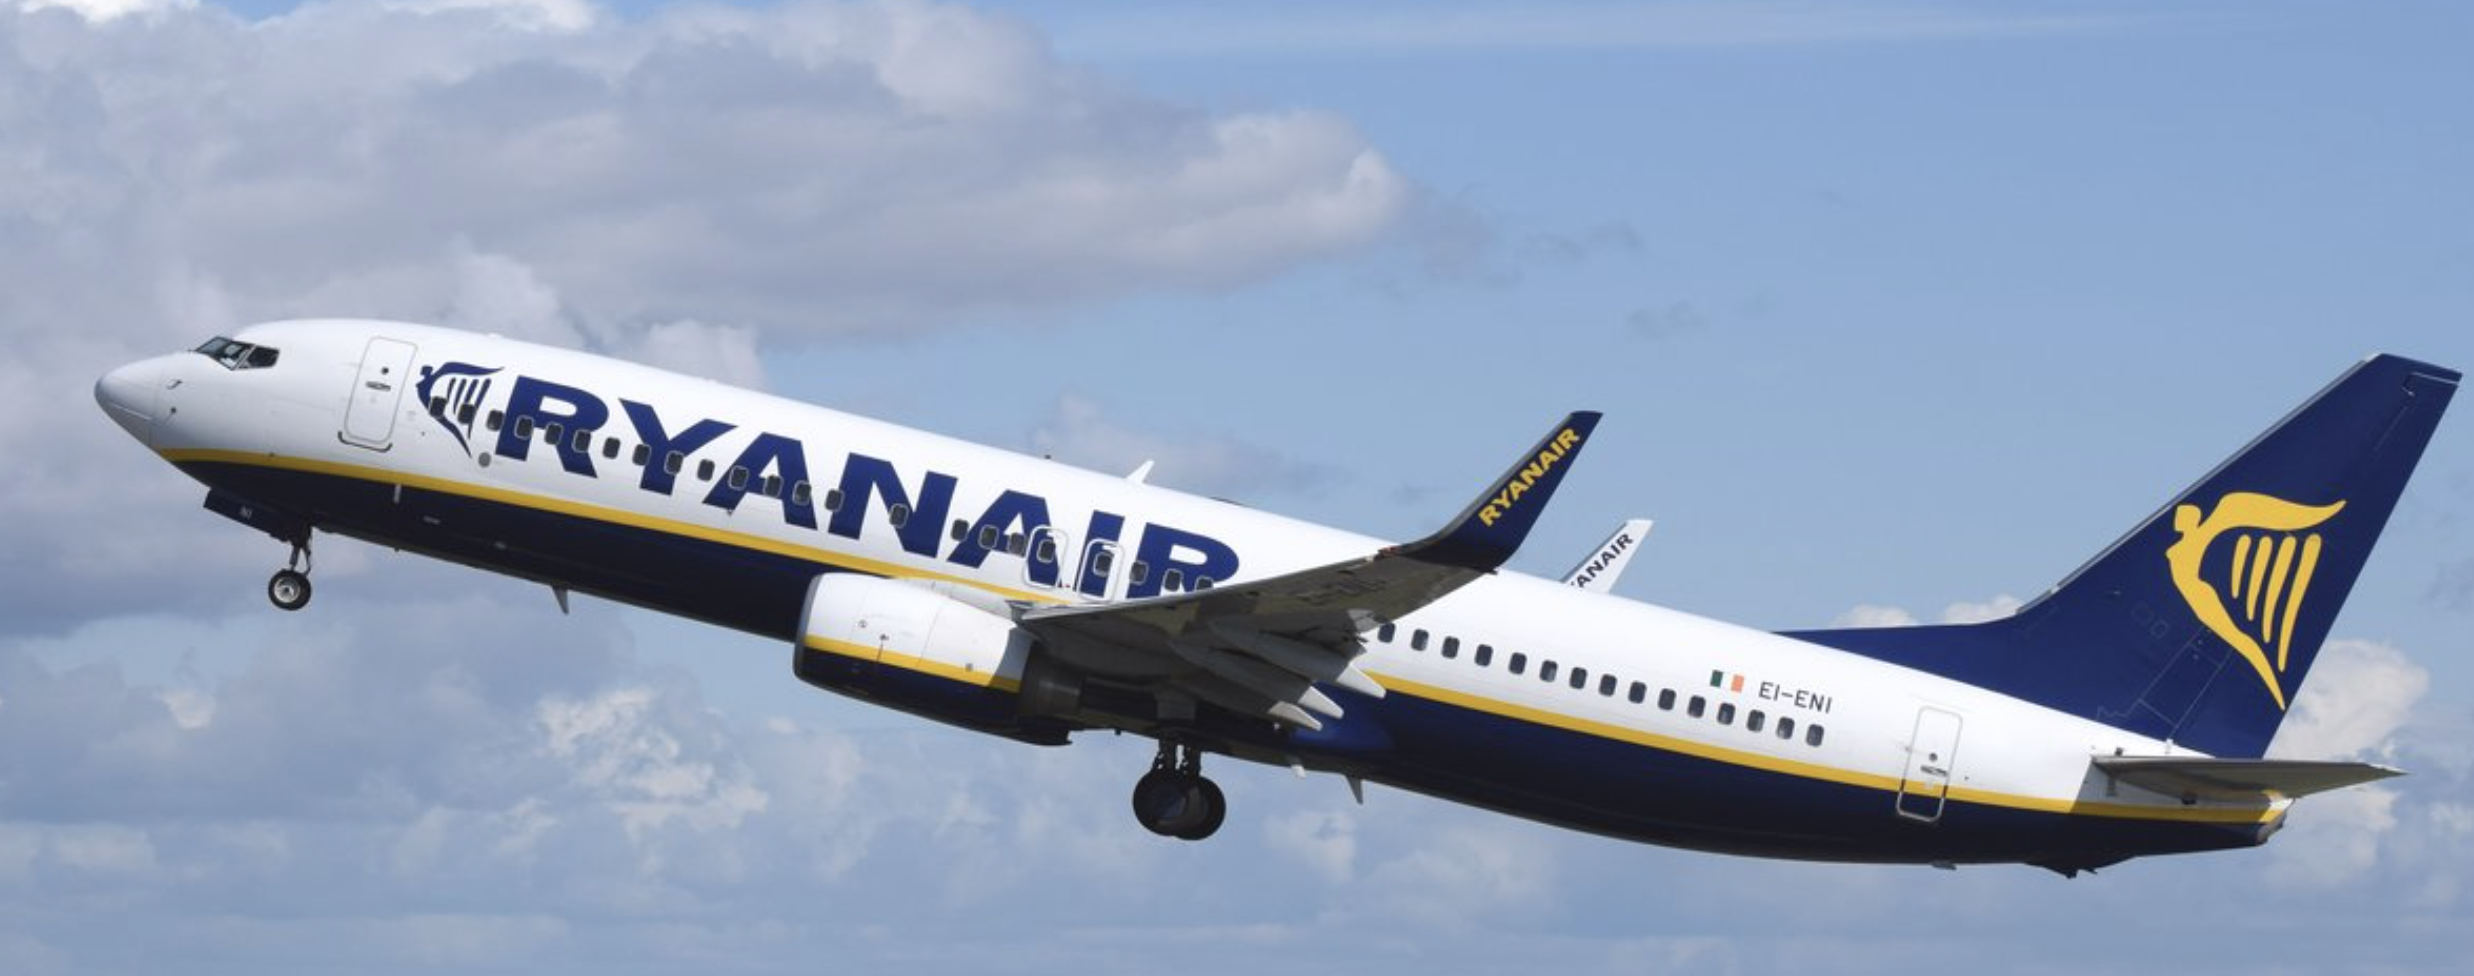 Un juzgado de Vigo avala la política de equipaje de mano de Ryanair